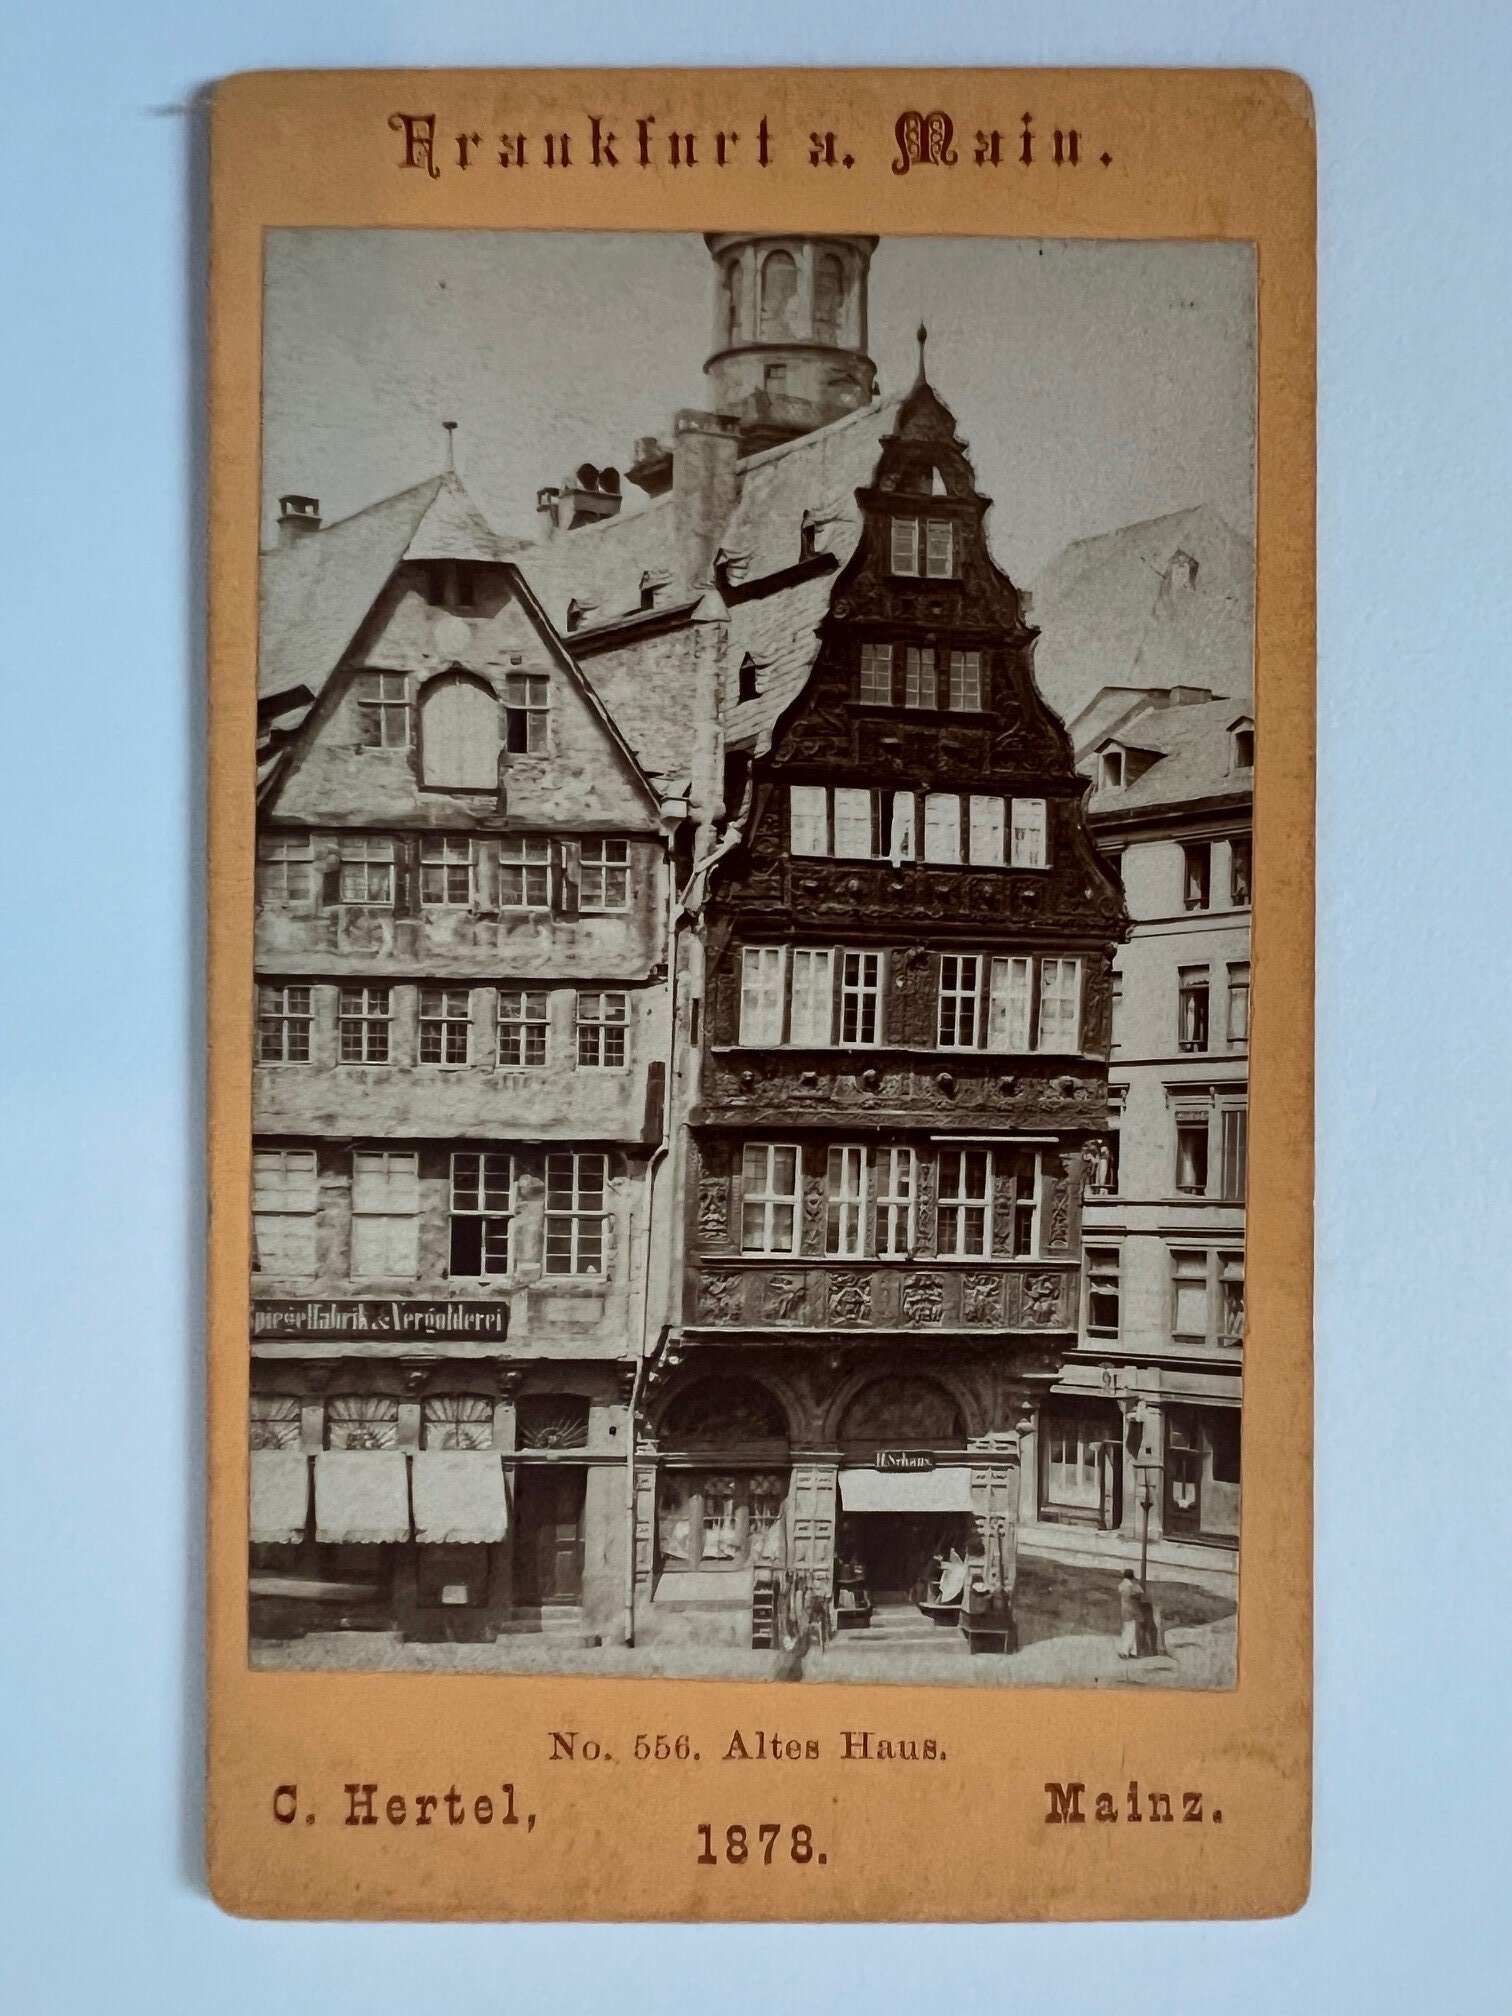 CdV, Carl Hertel, Frankfurt, Altes Haus (Salzhaus), 1878. (Taunus-Rhein-Main - Regionalgeschichtliche Sammlung Dr. Stefan Naas CC BY-NC-SA)